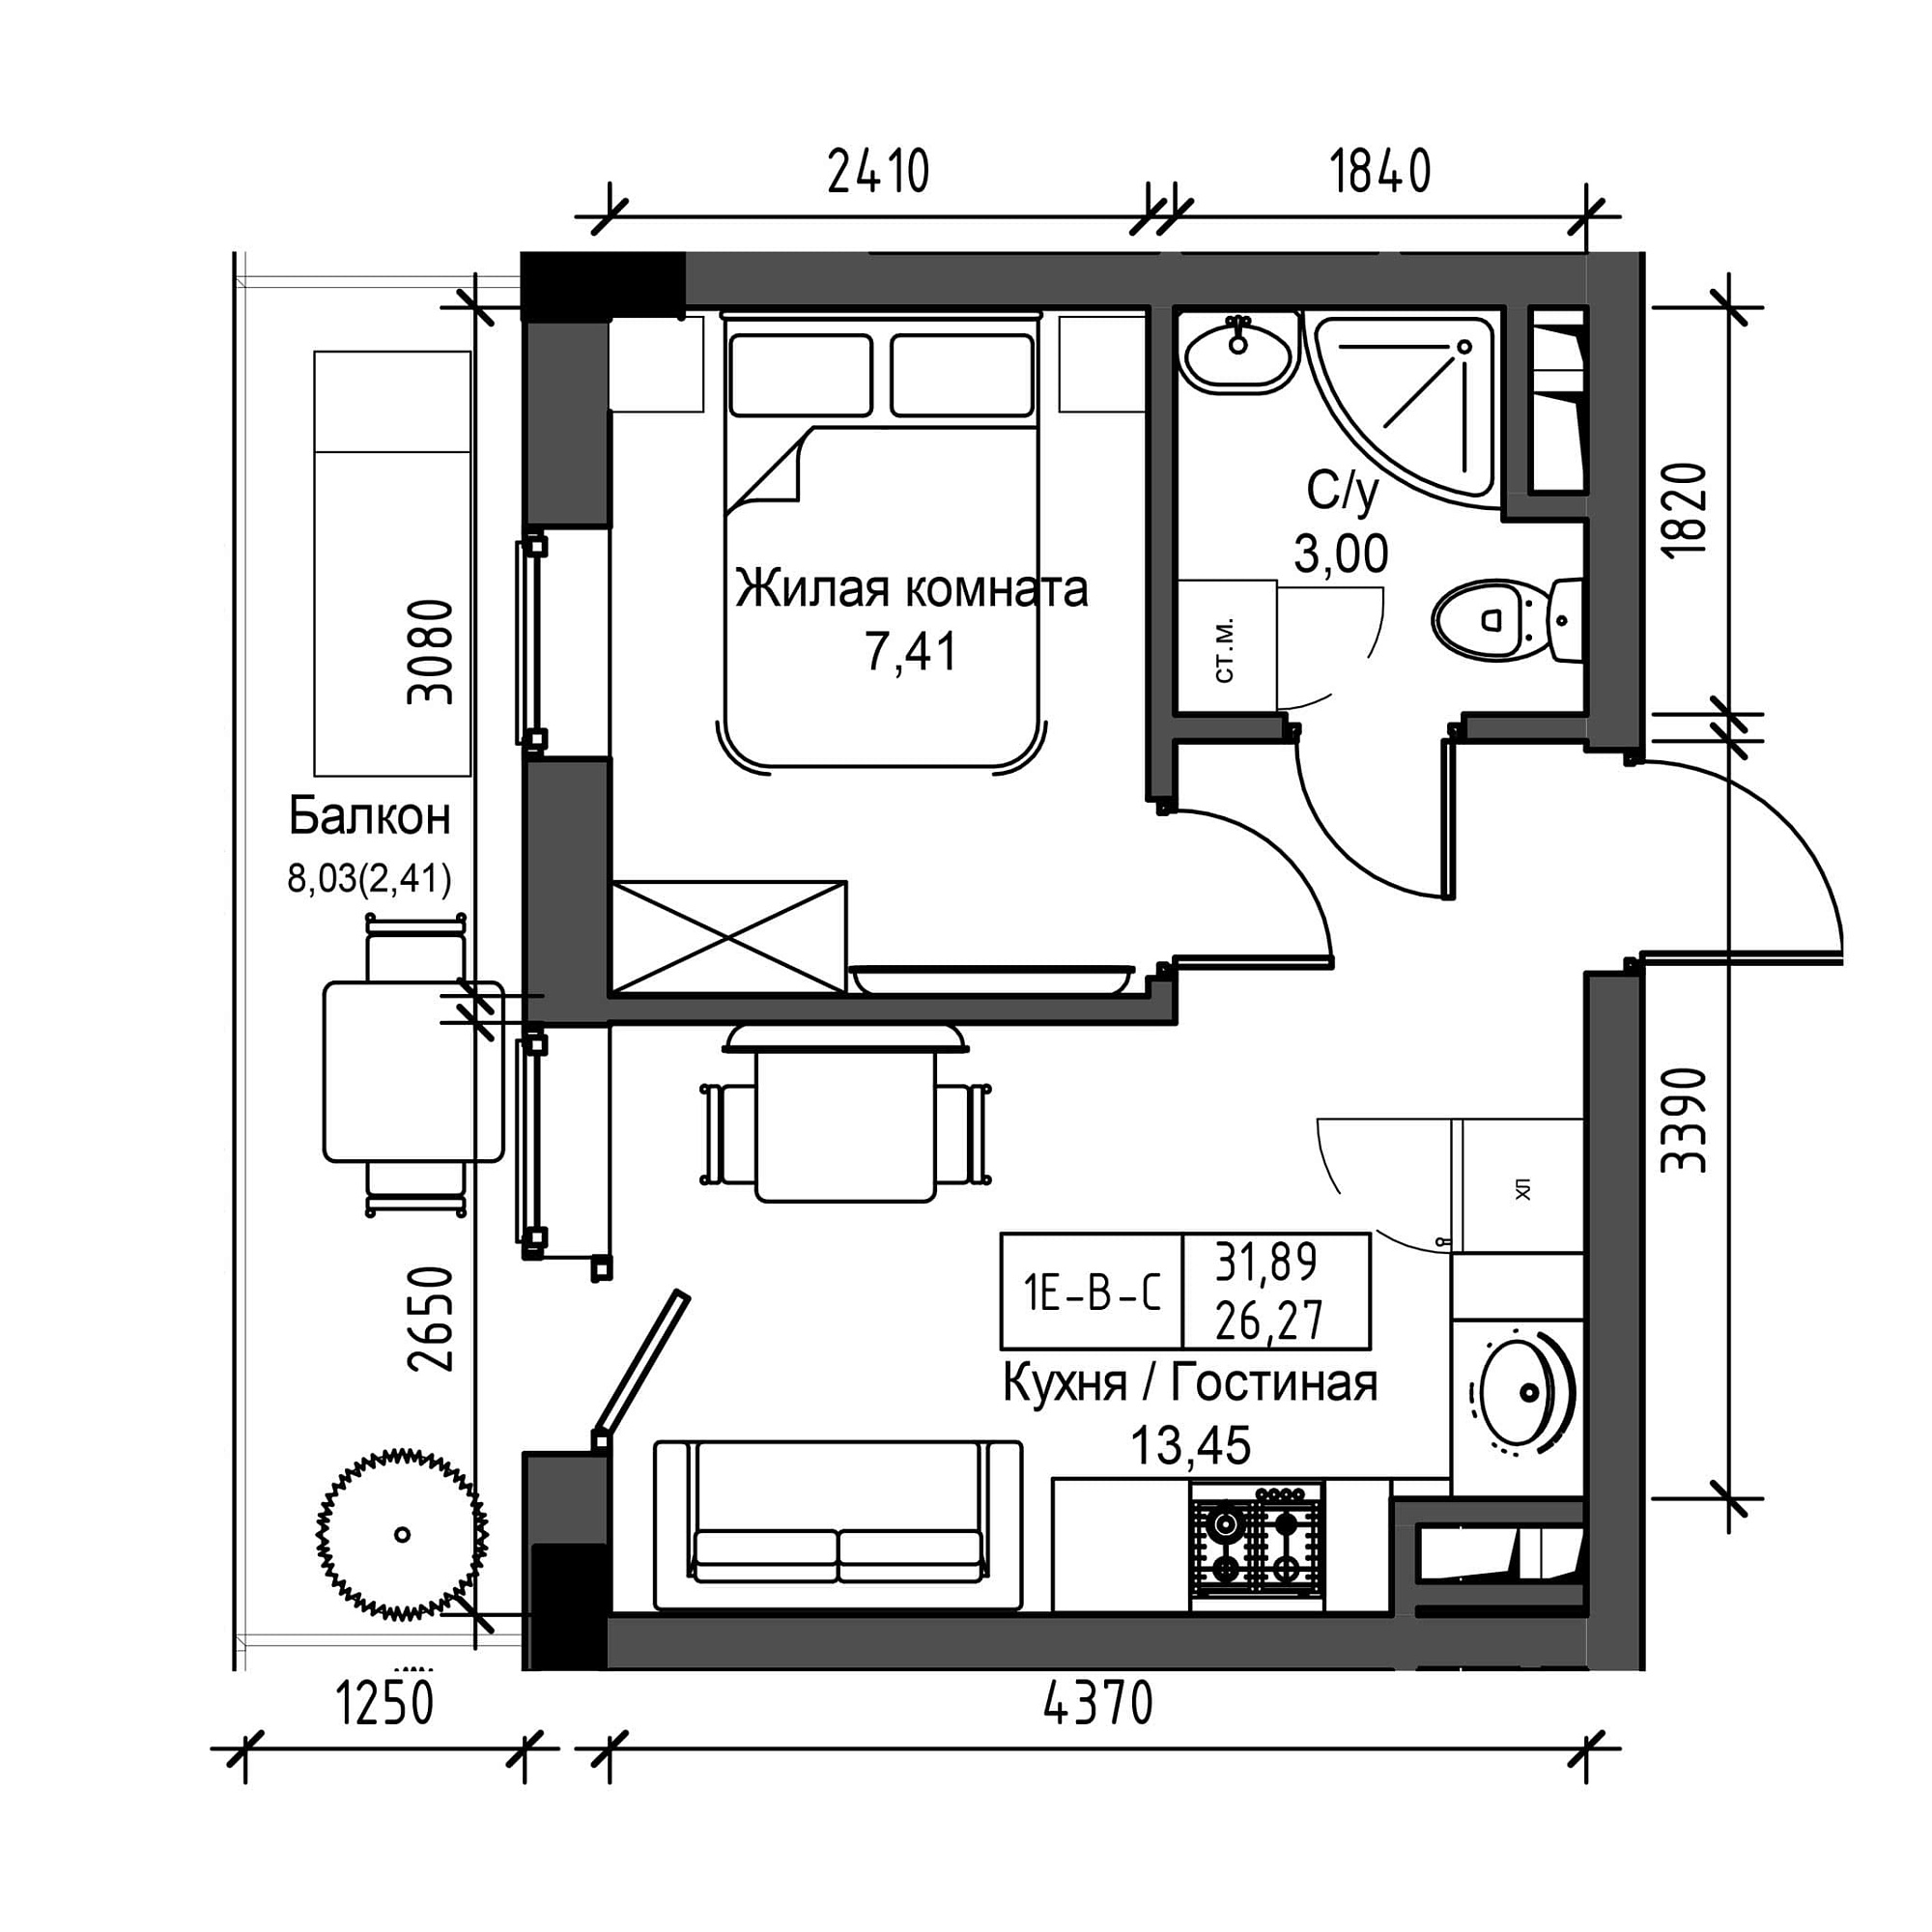 Планировка 1-к квартира площей 26.27м2, UM-001-08/0015.